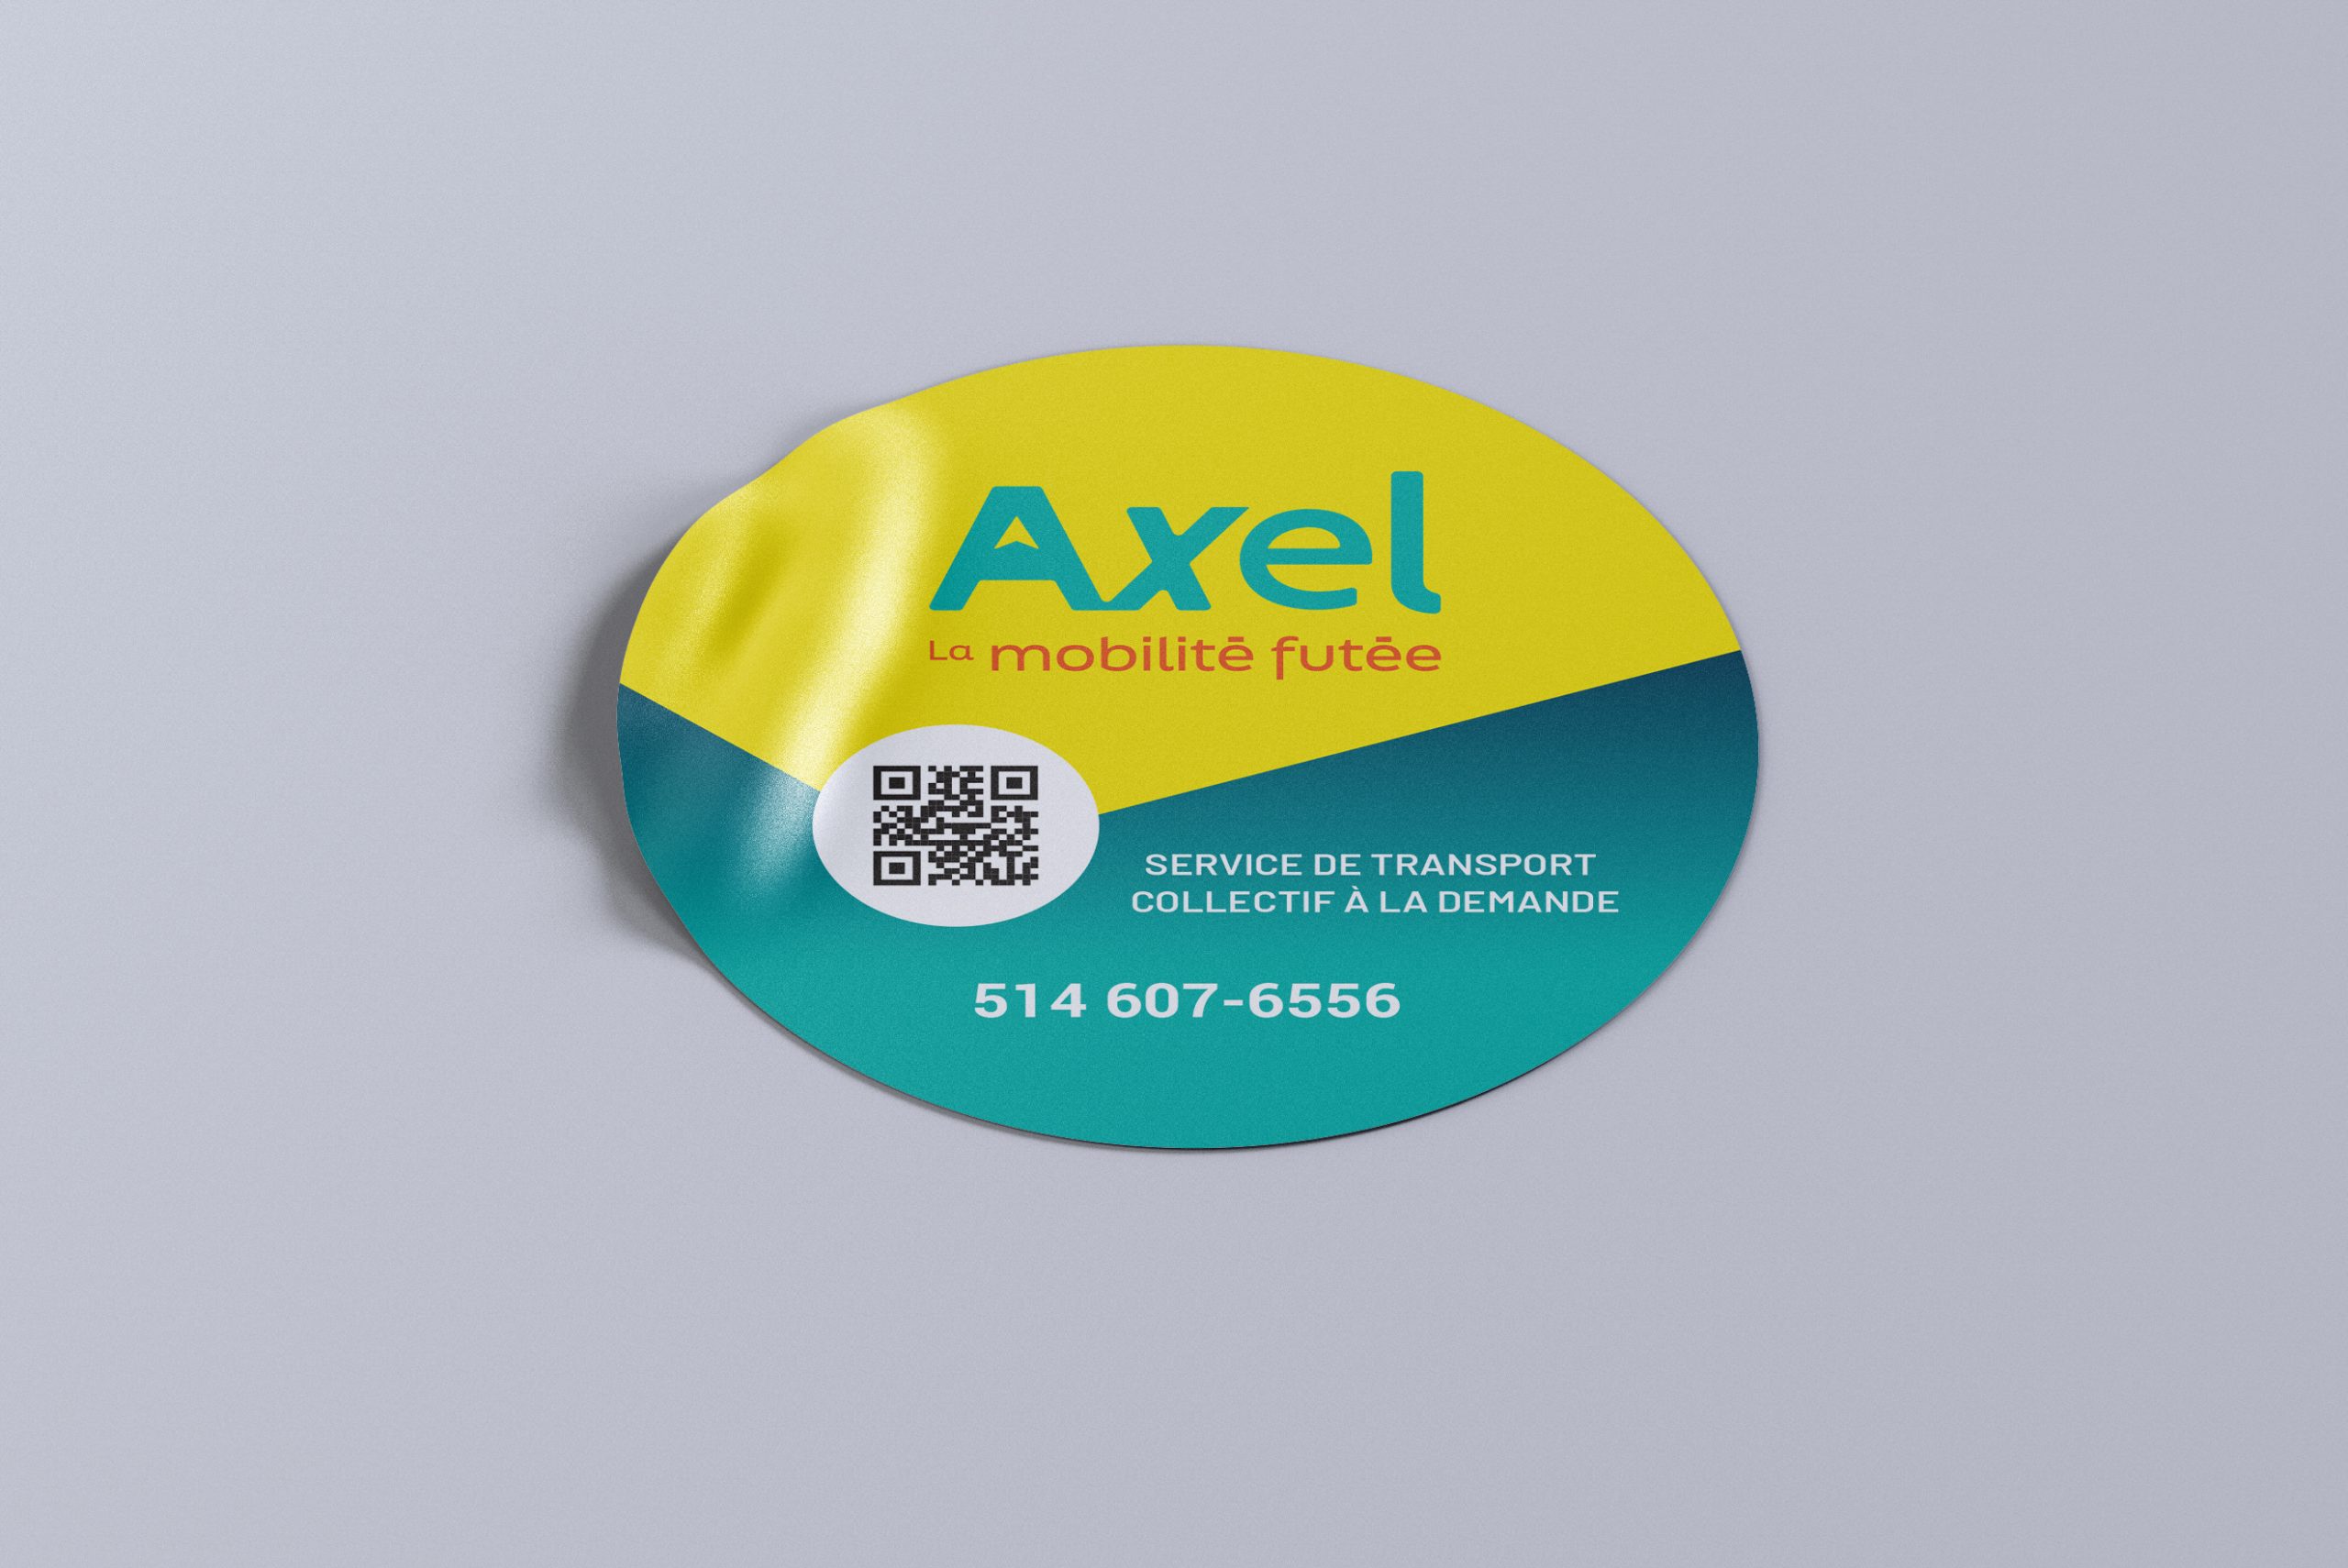 Une photo de l'autocollant jaune et turquoise d'Axel.